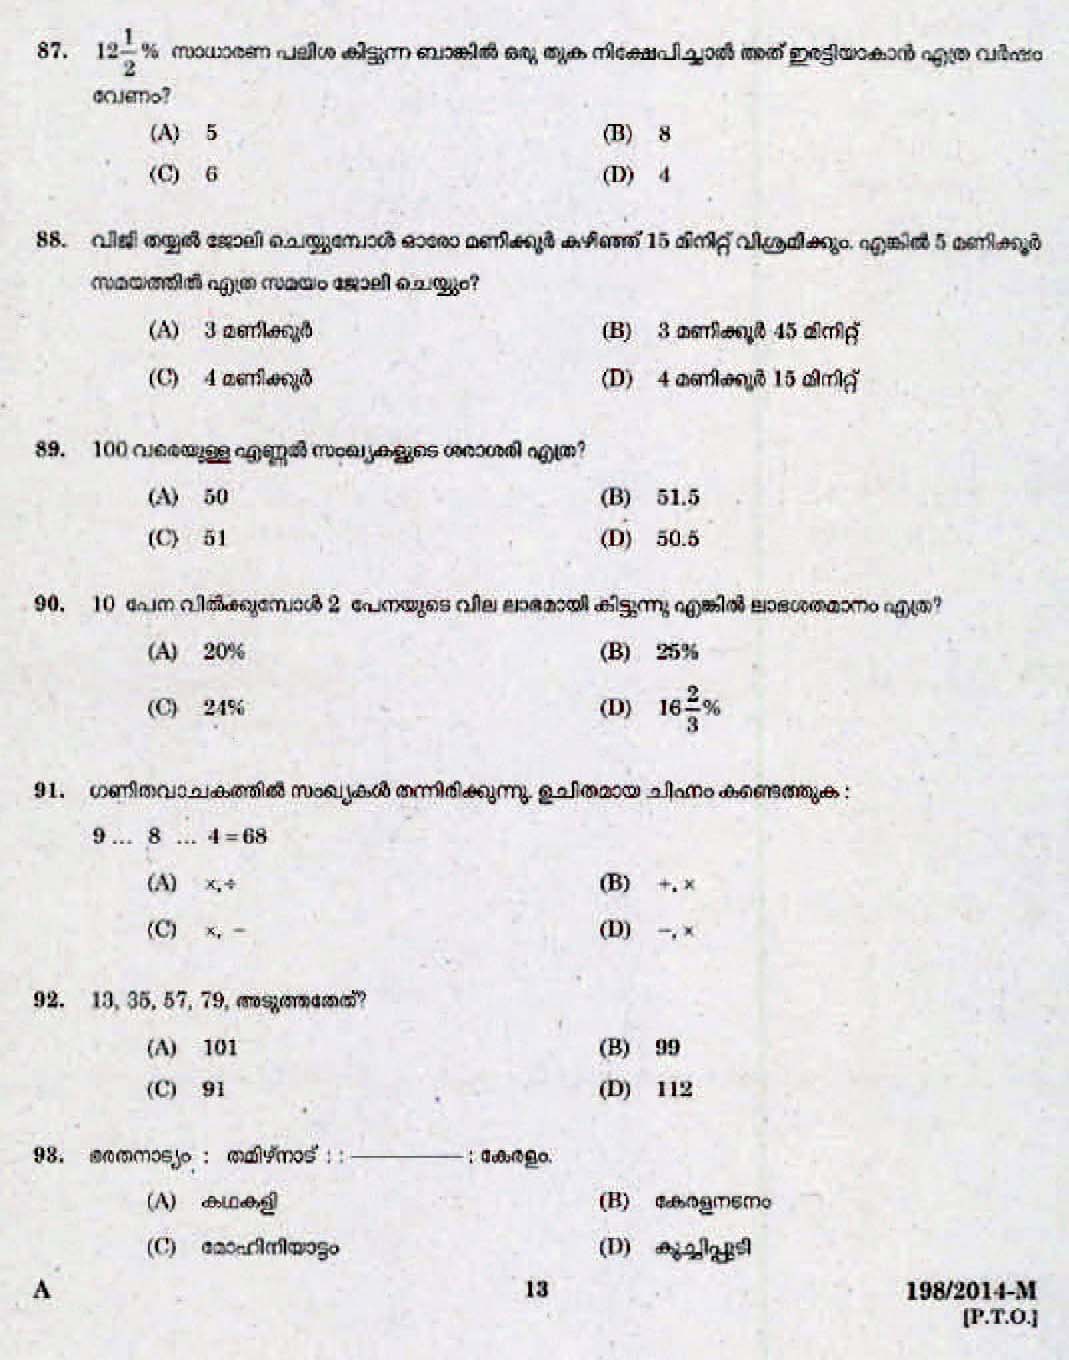 Kerala Last Grade Servants Exam 2014 Question Paper Code 1982014 M 11